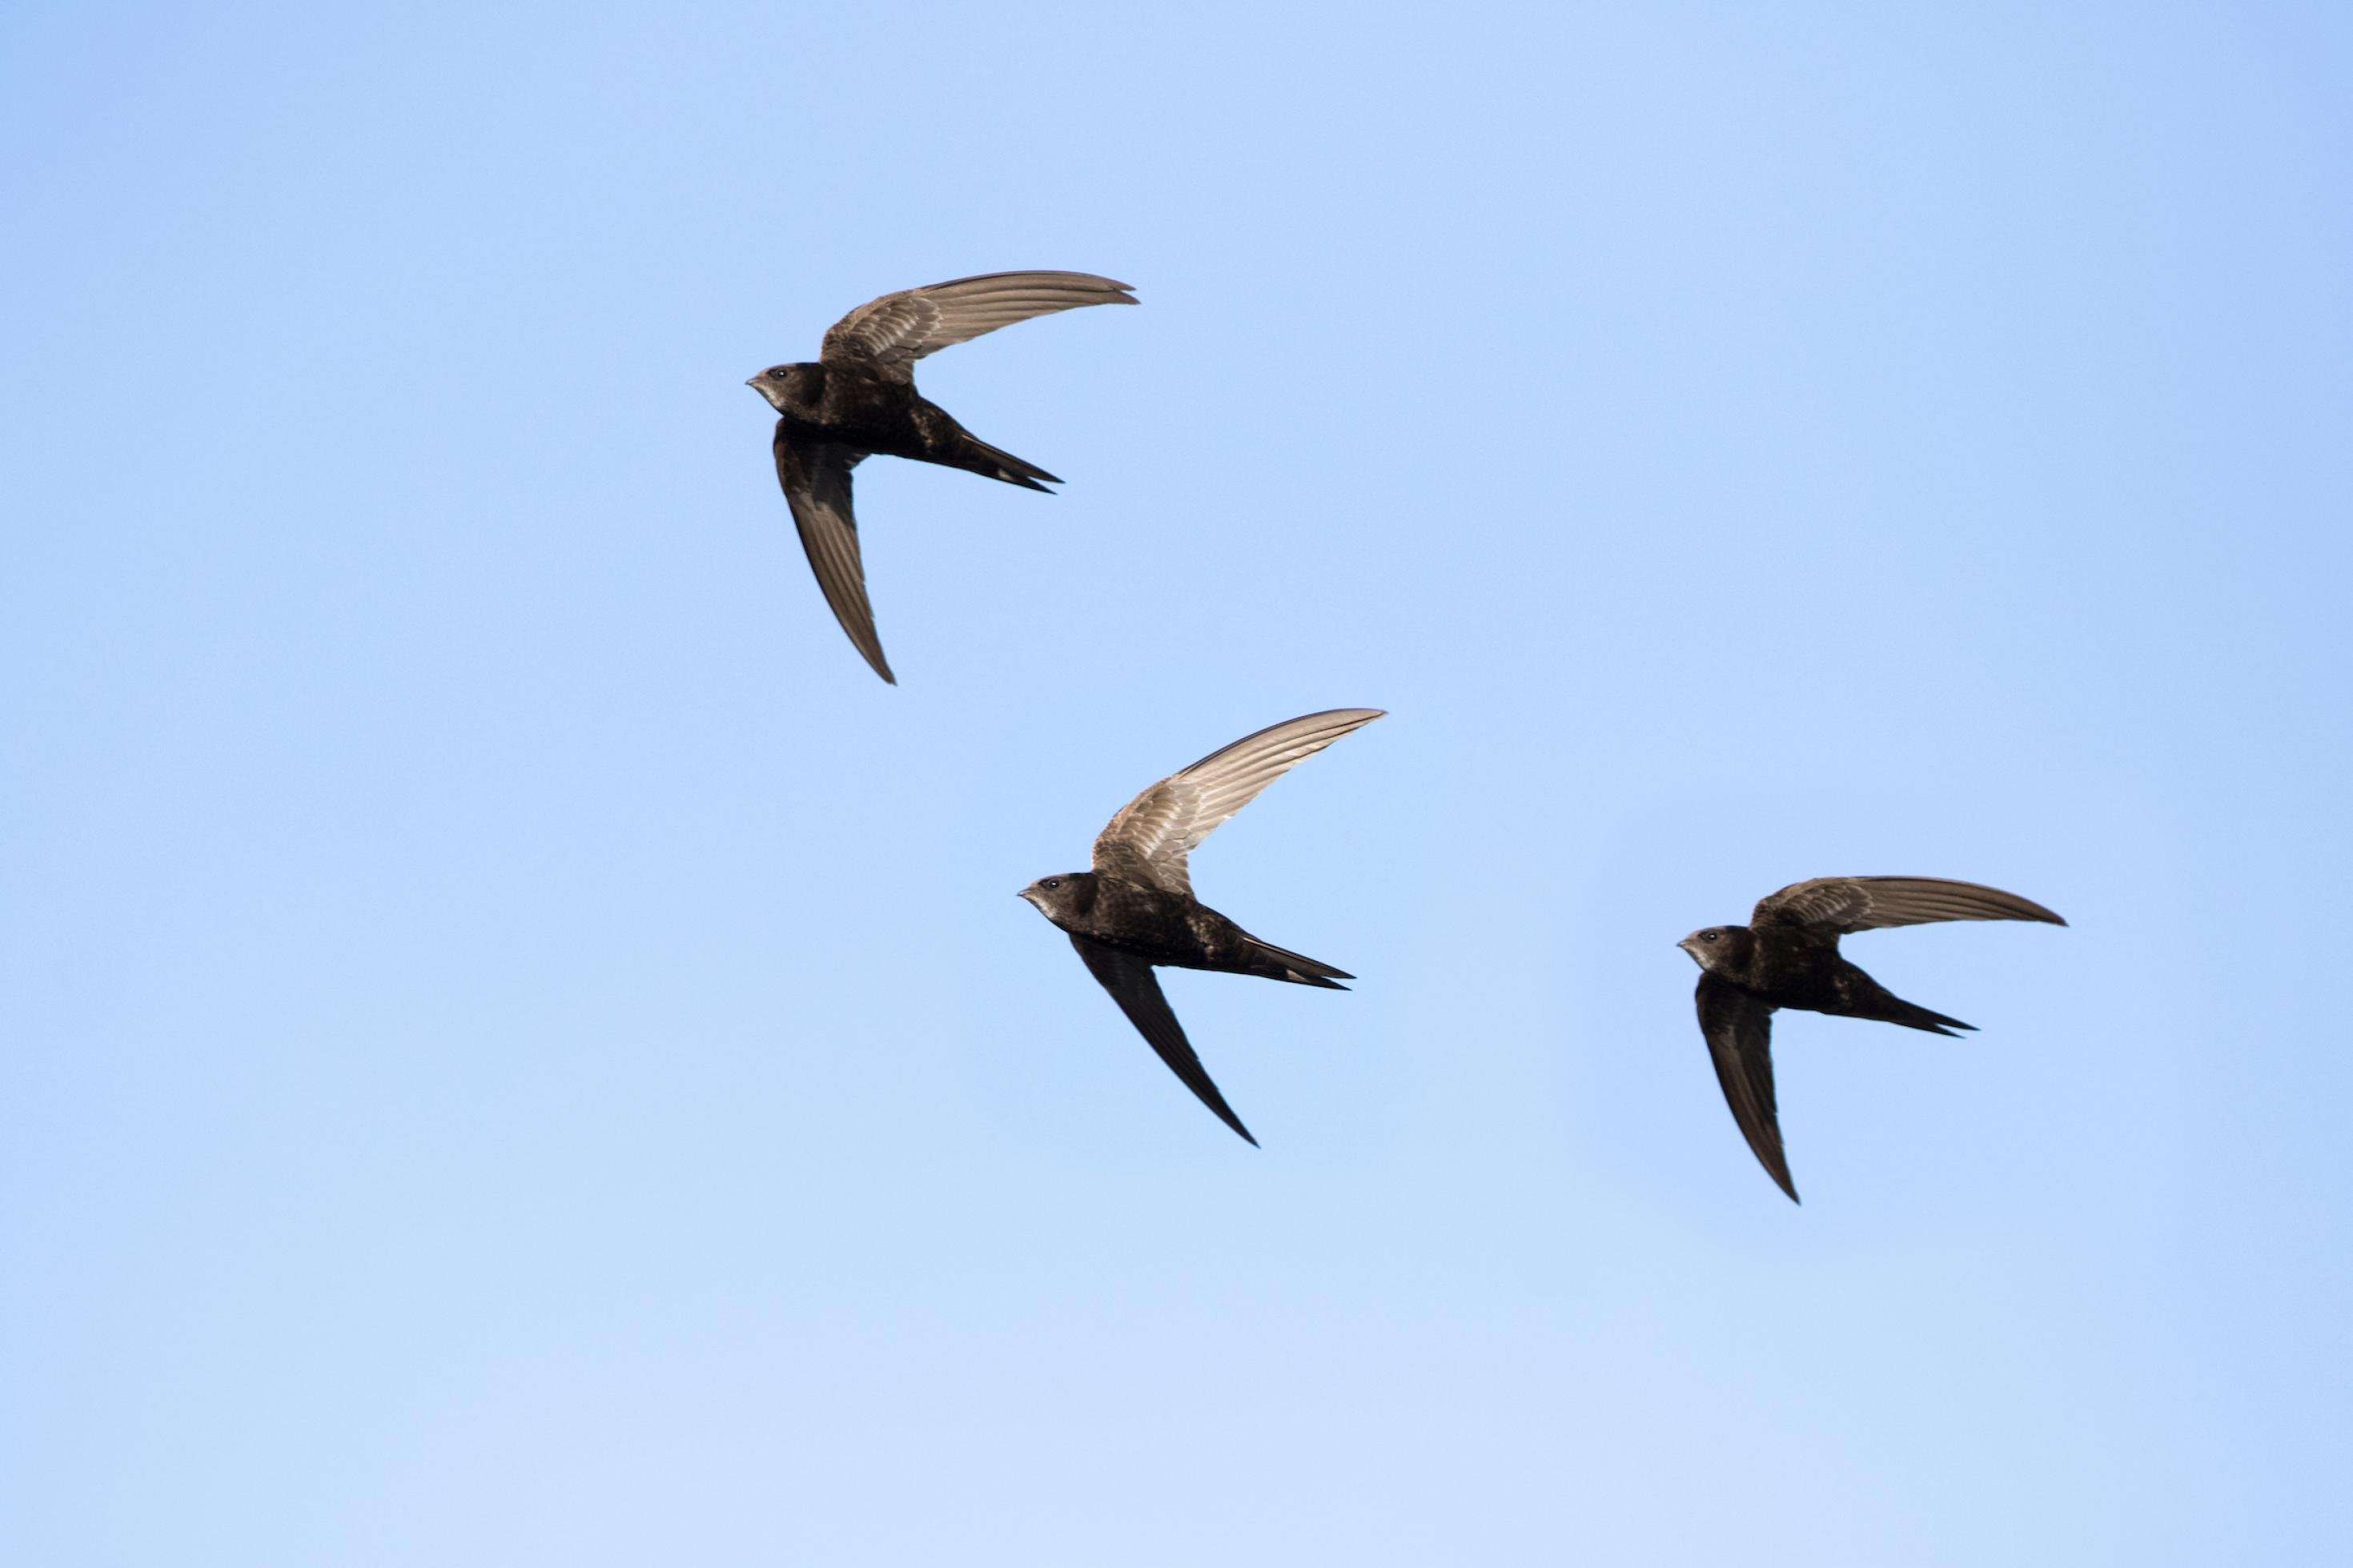 Drei Mauersegler mit ihren langen spitzen Flügeln im Flug vor blauem Himmel.